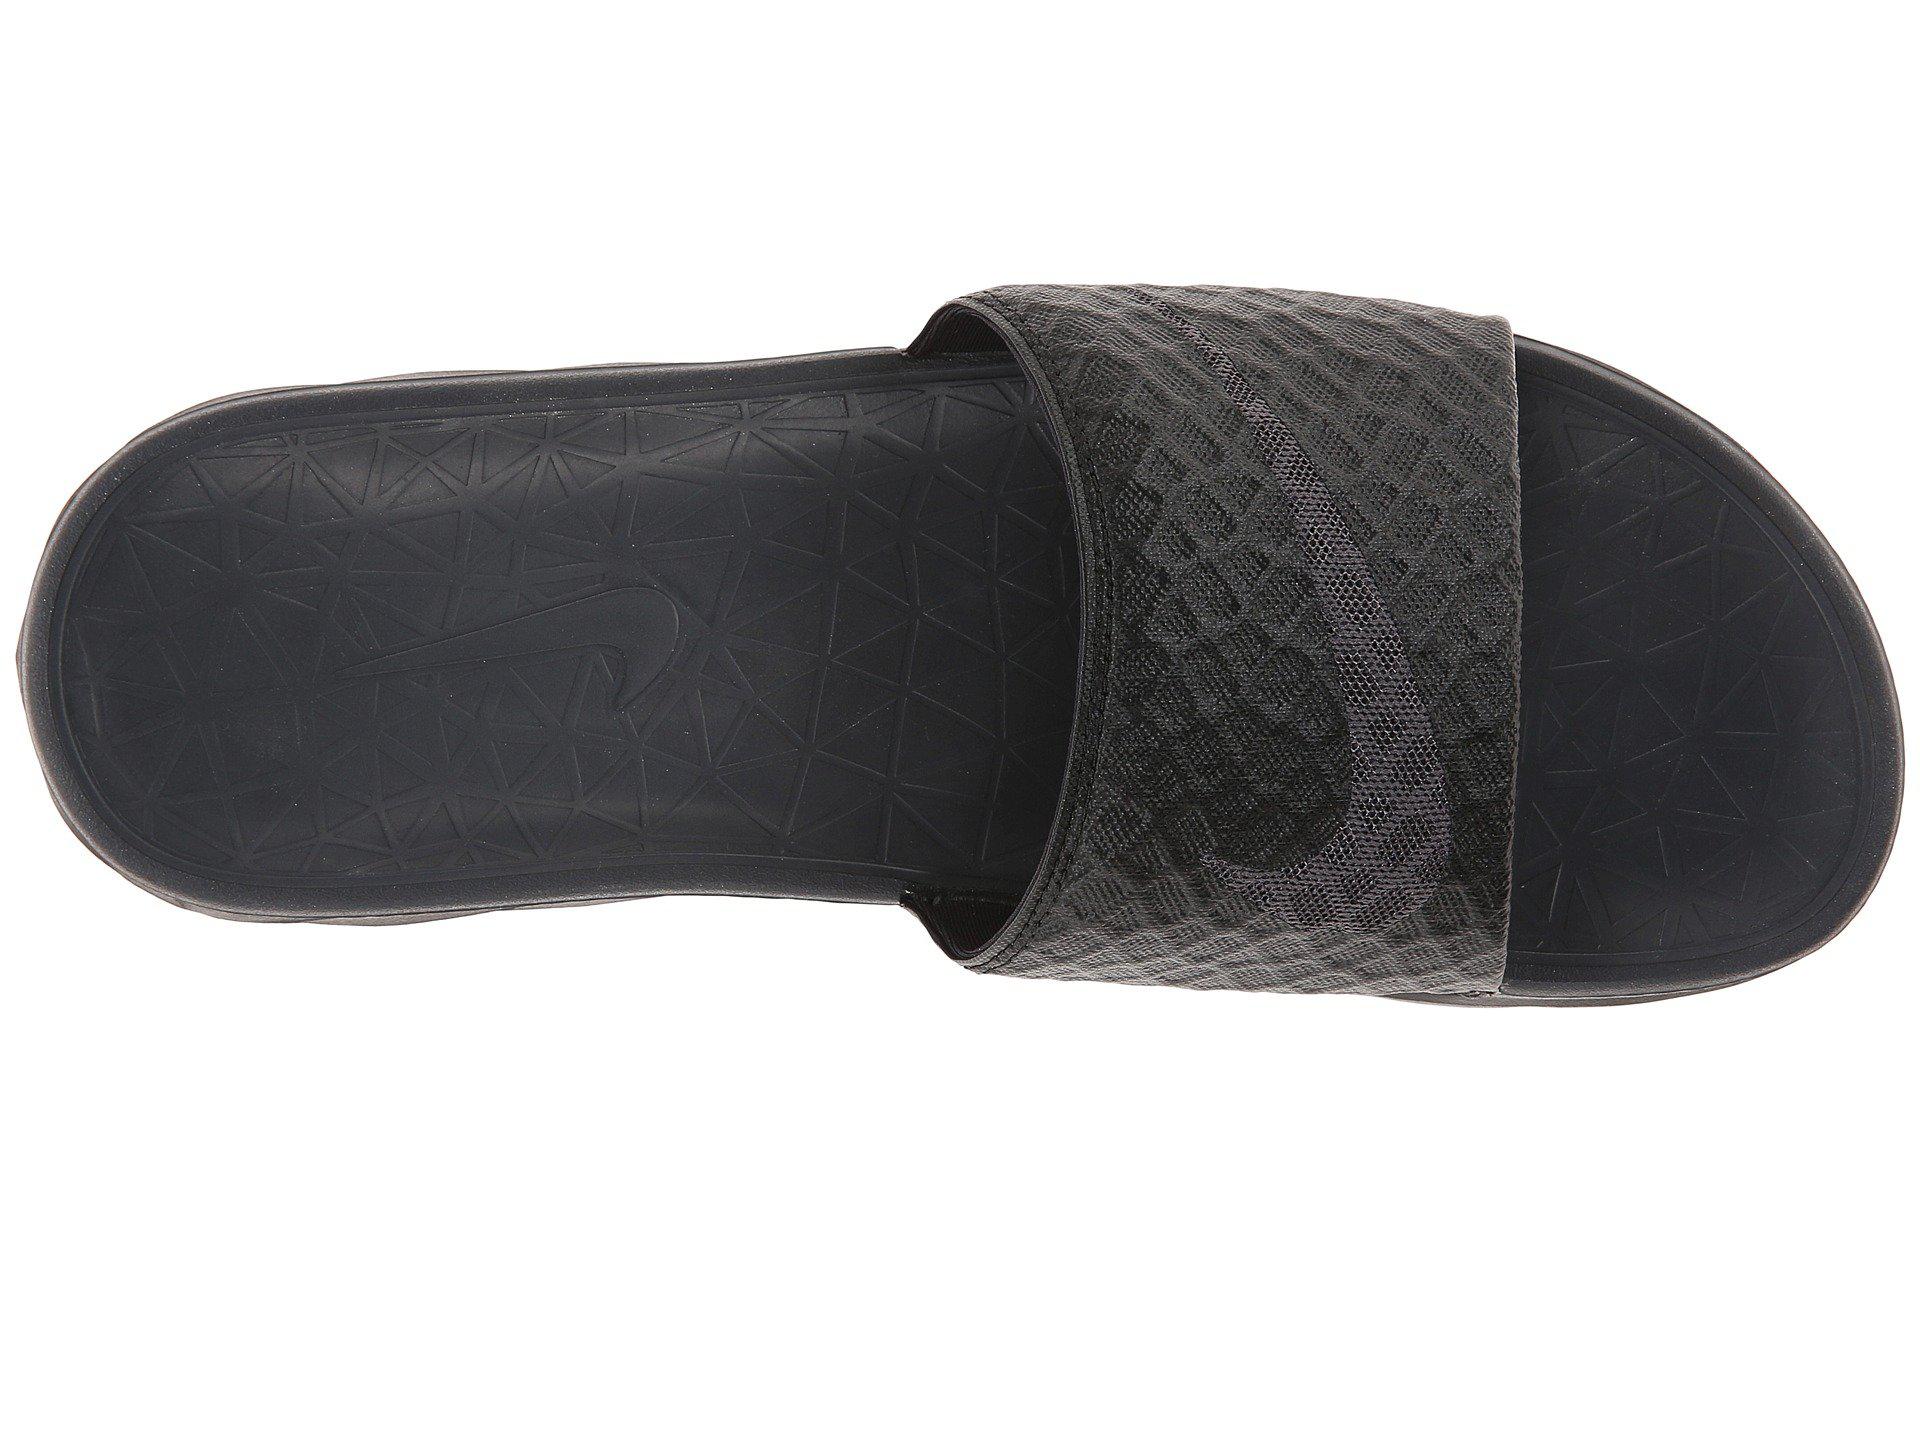 Nike Synthetic Benassi Solarsoft Slide 2 (black/anthracite) Men's Slide  Shoes for Men | Lyst